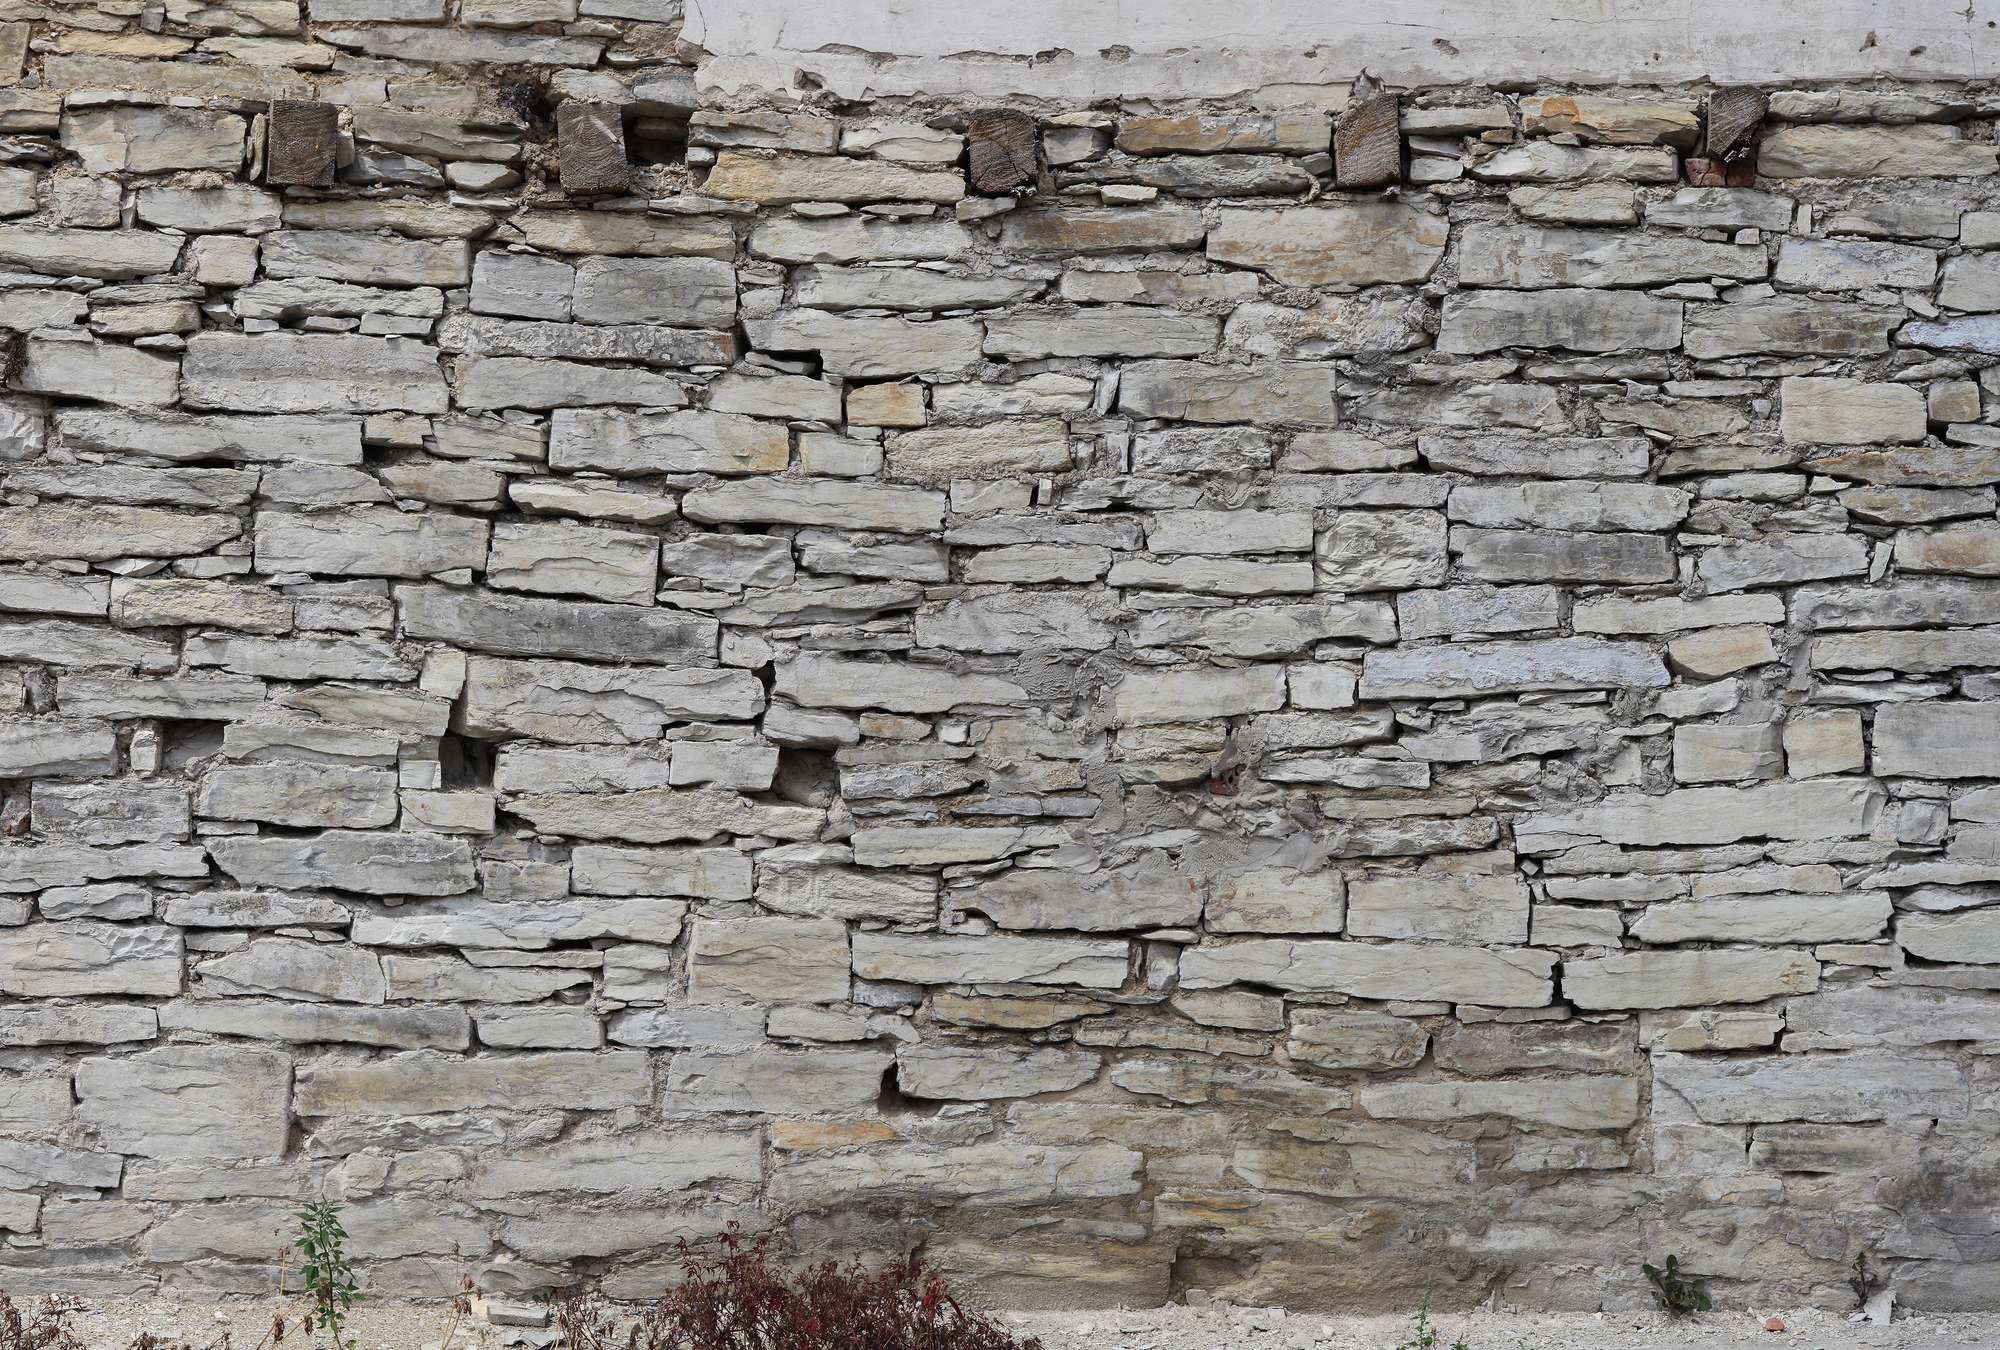             Carta da parati fotografica effetto pietra con muro chiaro in pietra a secco
        